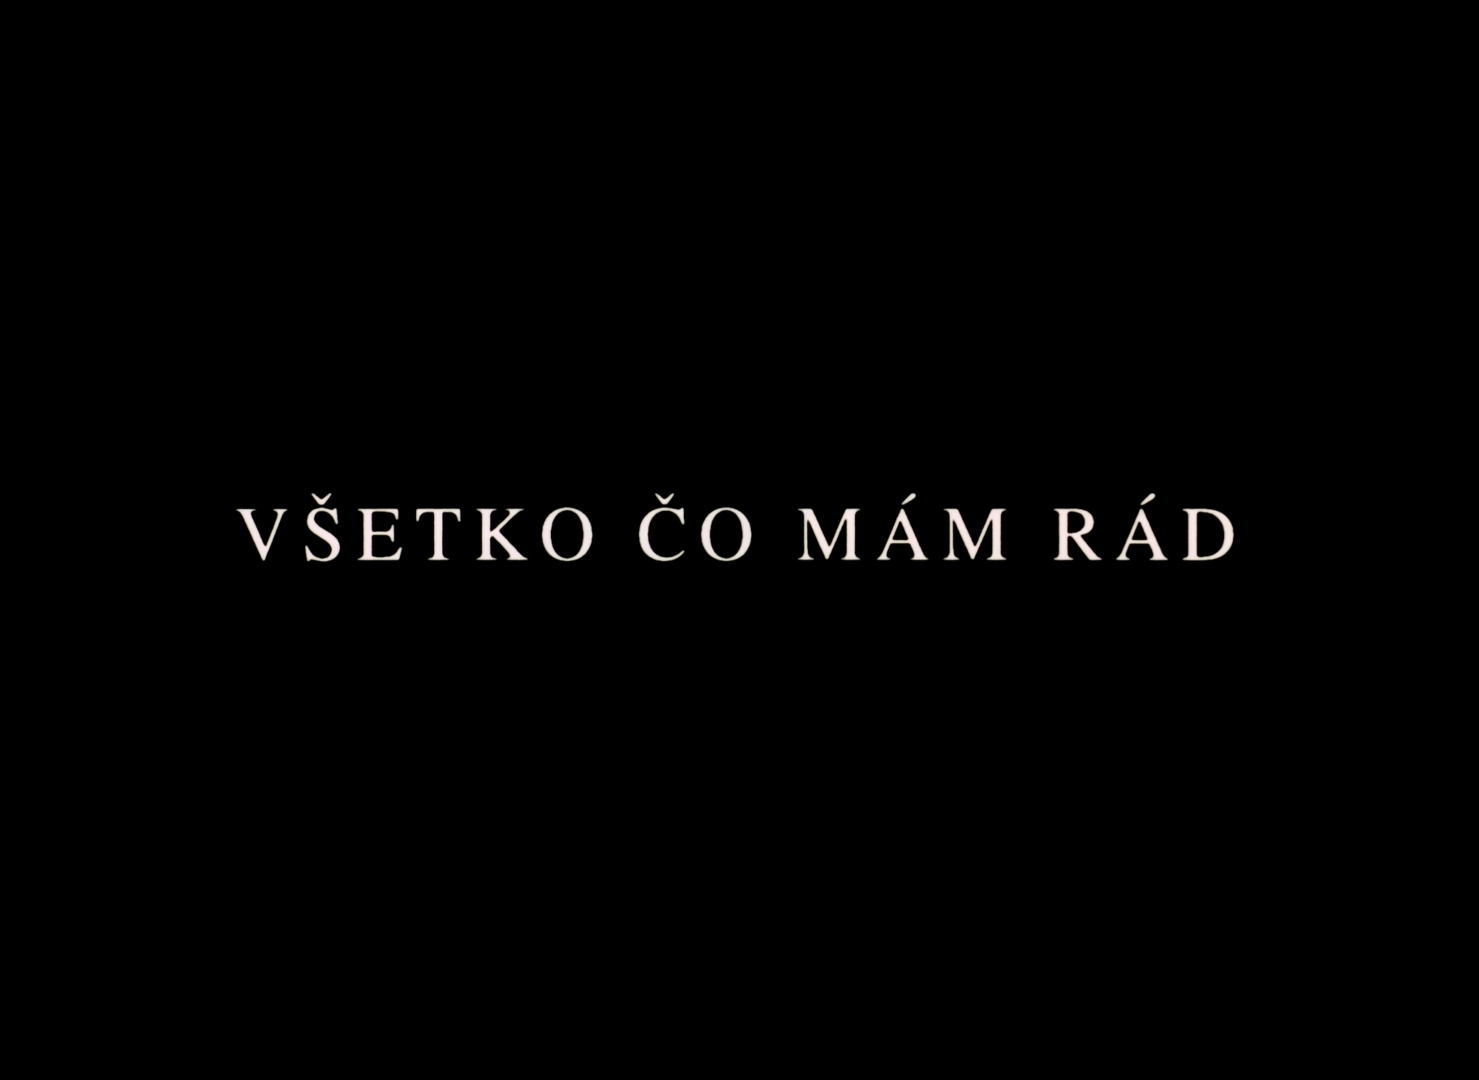 Slovak Film Institute / Blu-ray (frame 475)